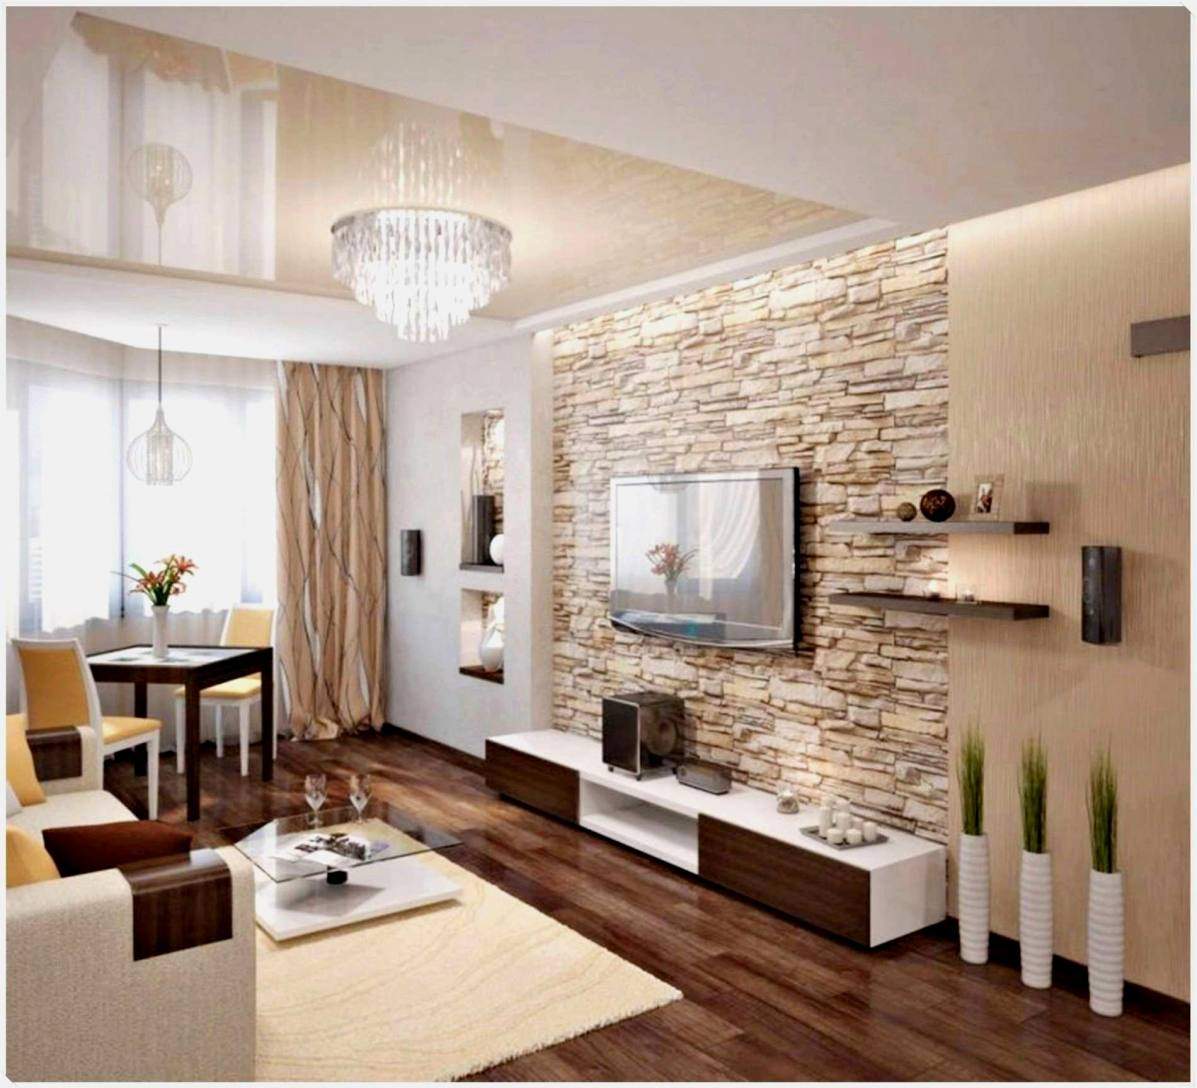 wohnzimmer holz modern neu wohnideen wohnzimmer modern ideen was solltest du tun of wohnzimmer holz modern